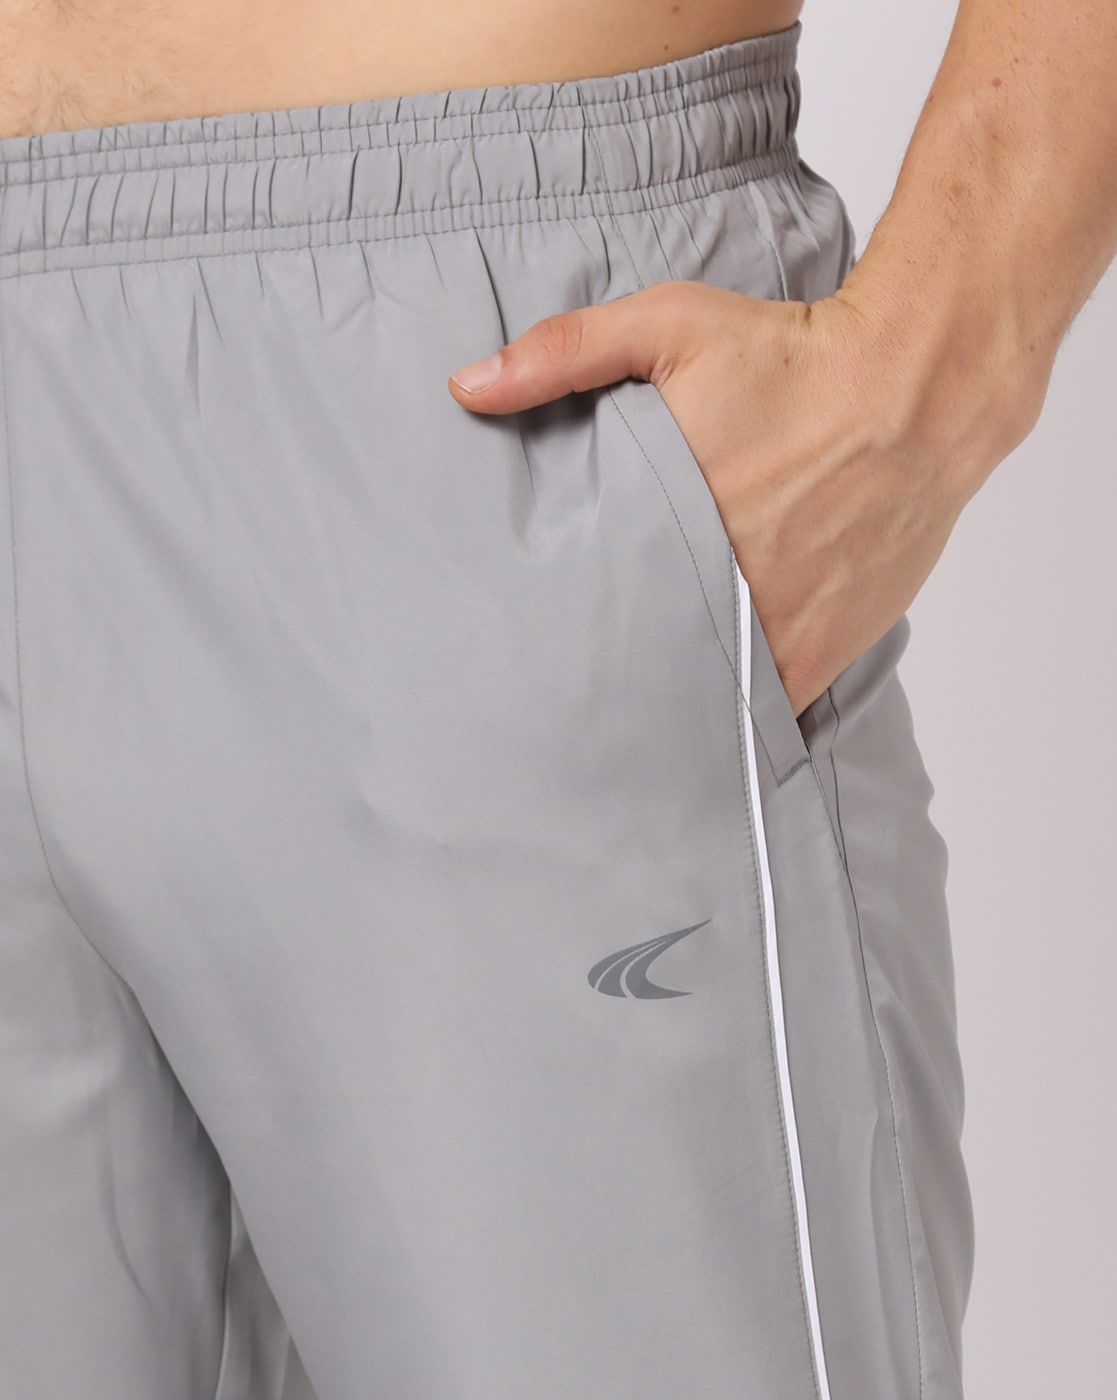 Buy Grey Track Pants for Men by Teamspirit Online | Ajio.com